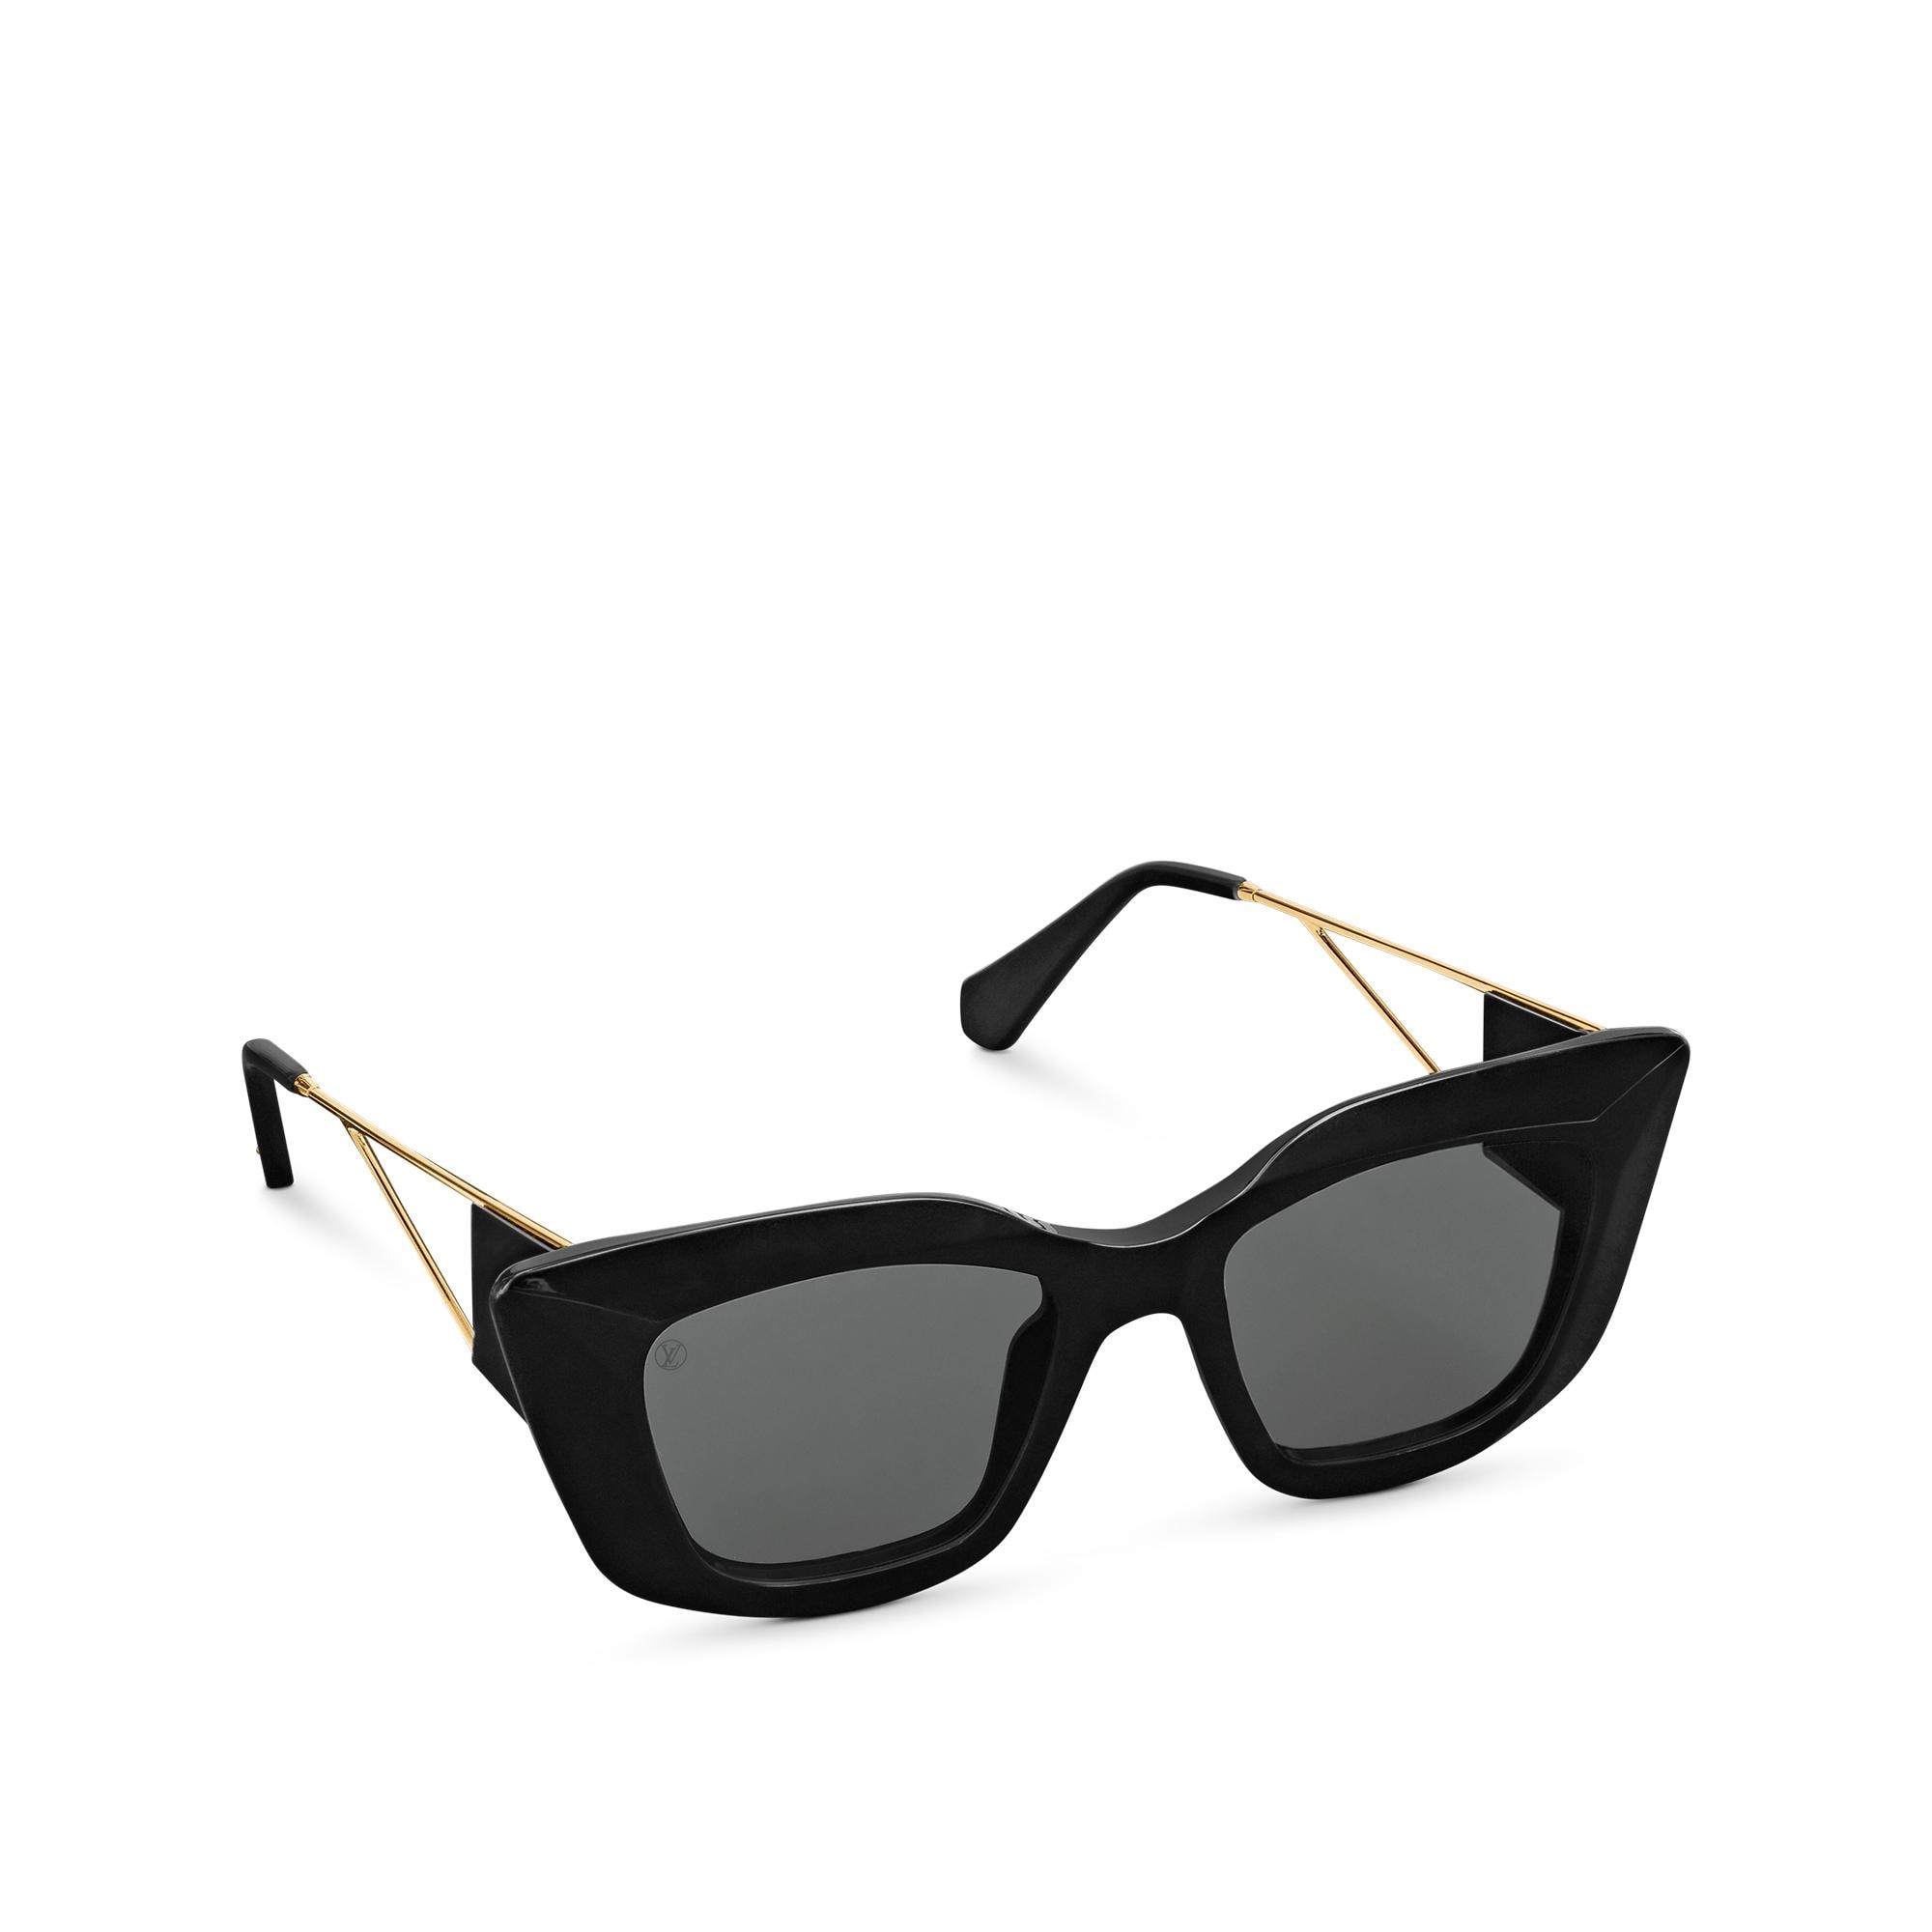 Louis Vuitton Arizona Dream Sunglasses in Black – WOMEN – Accessories Z1220W